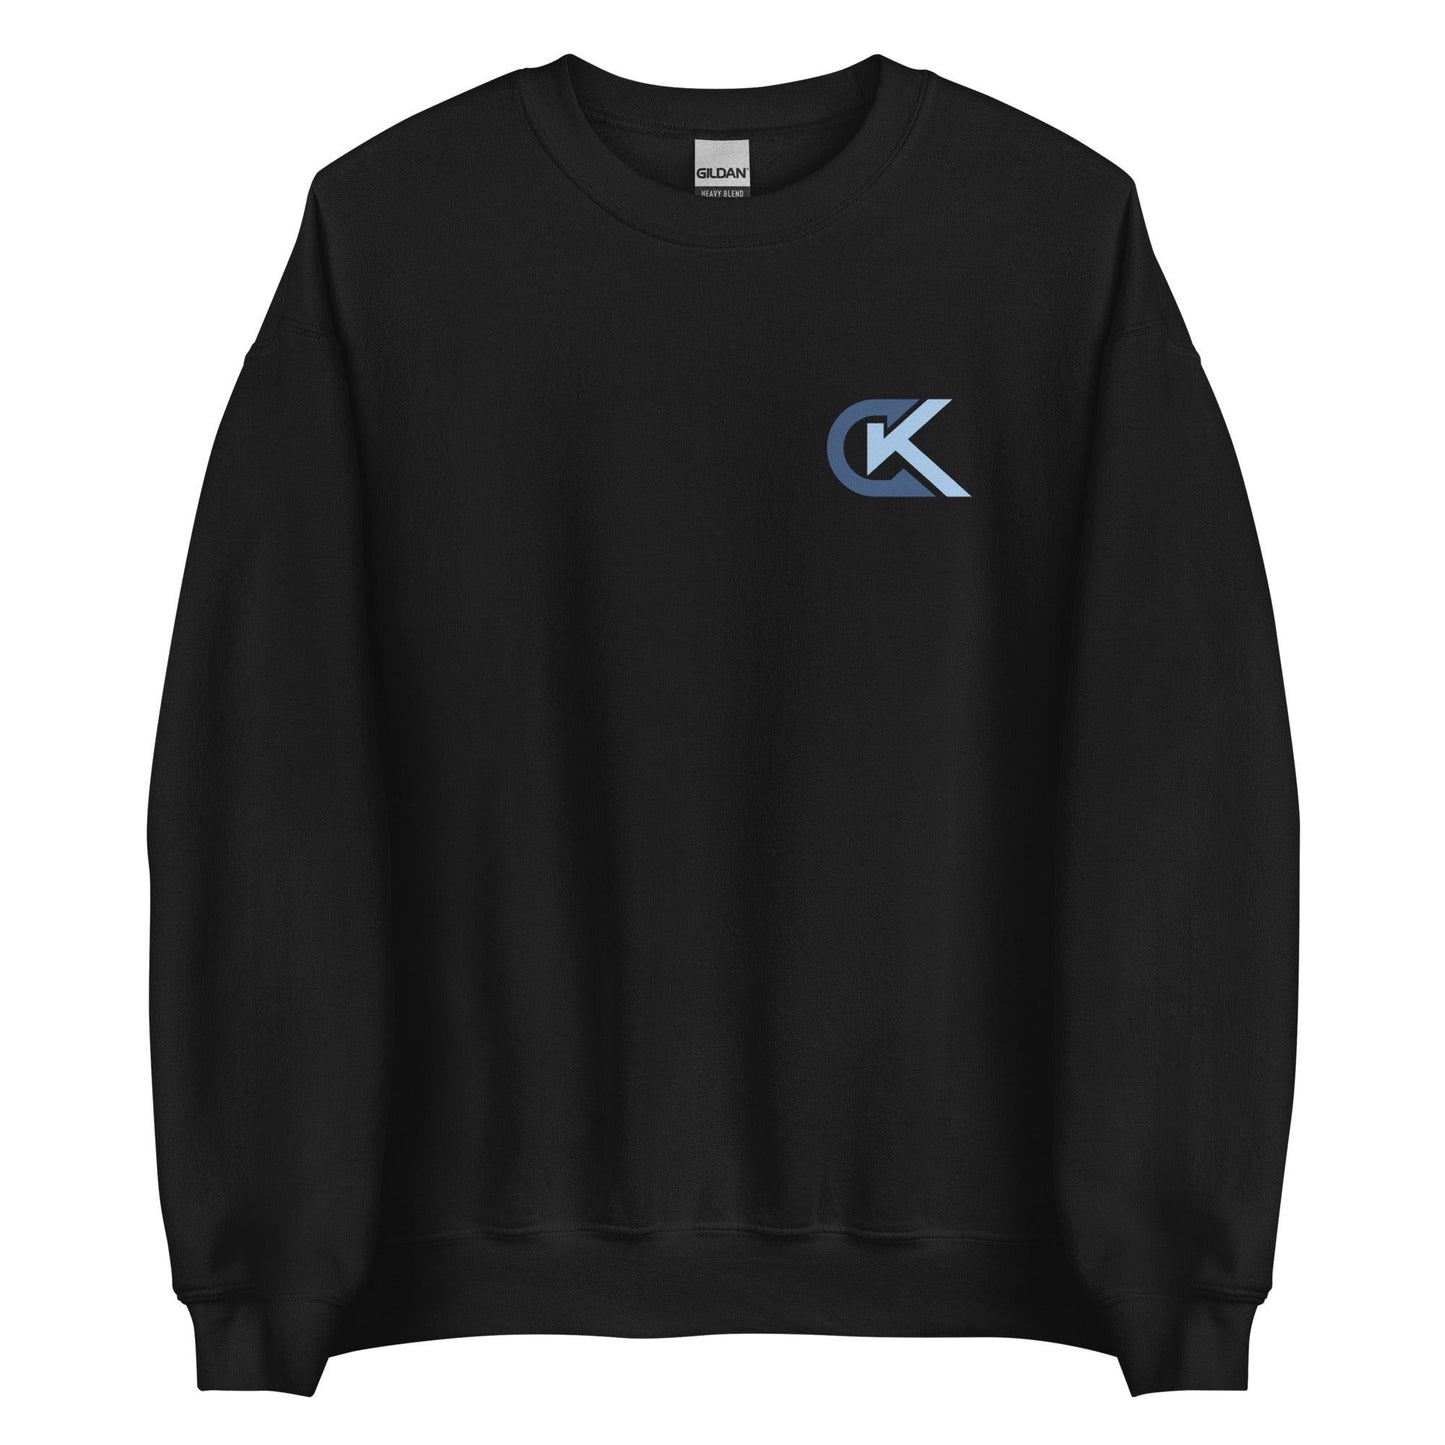 Corey Kluber "Elite" Sweatshirt - Fan Arch